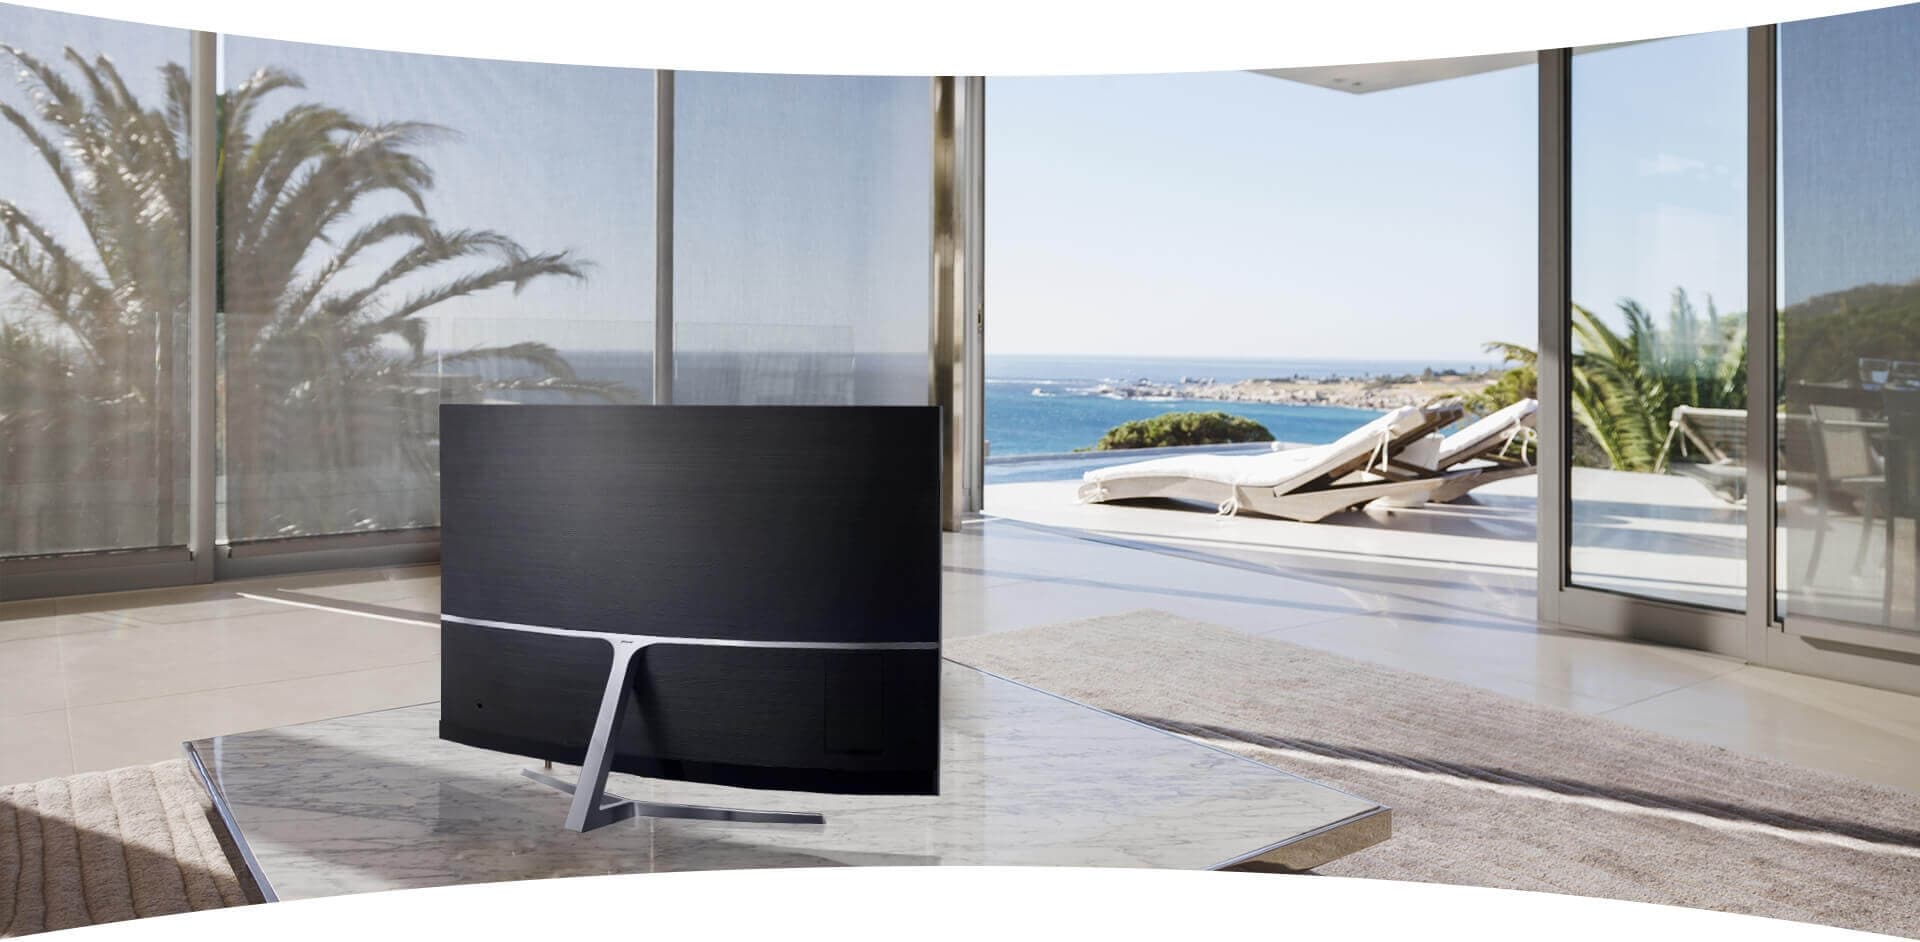 TV Samsung đặt giữa phòng khách như tô điểm thêm của không gian nội thất đẹp.